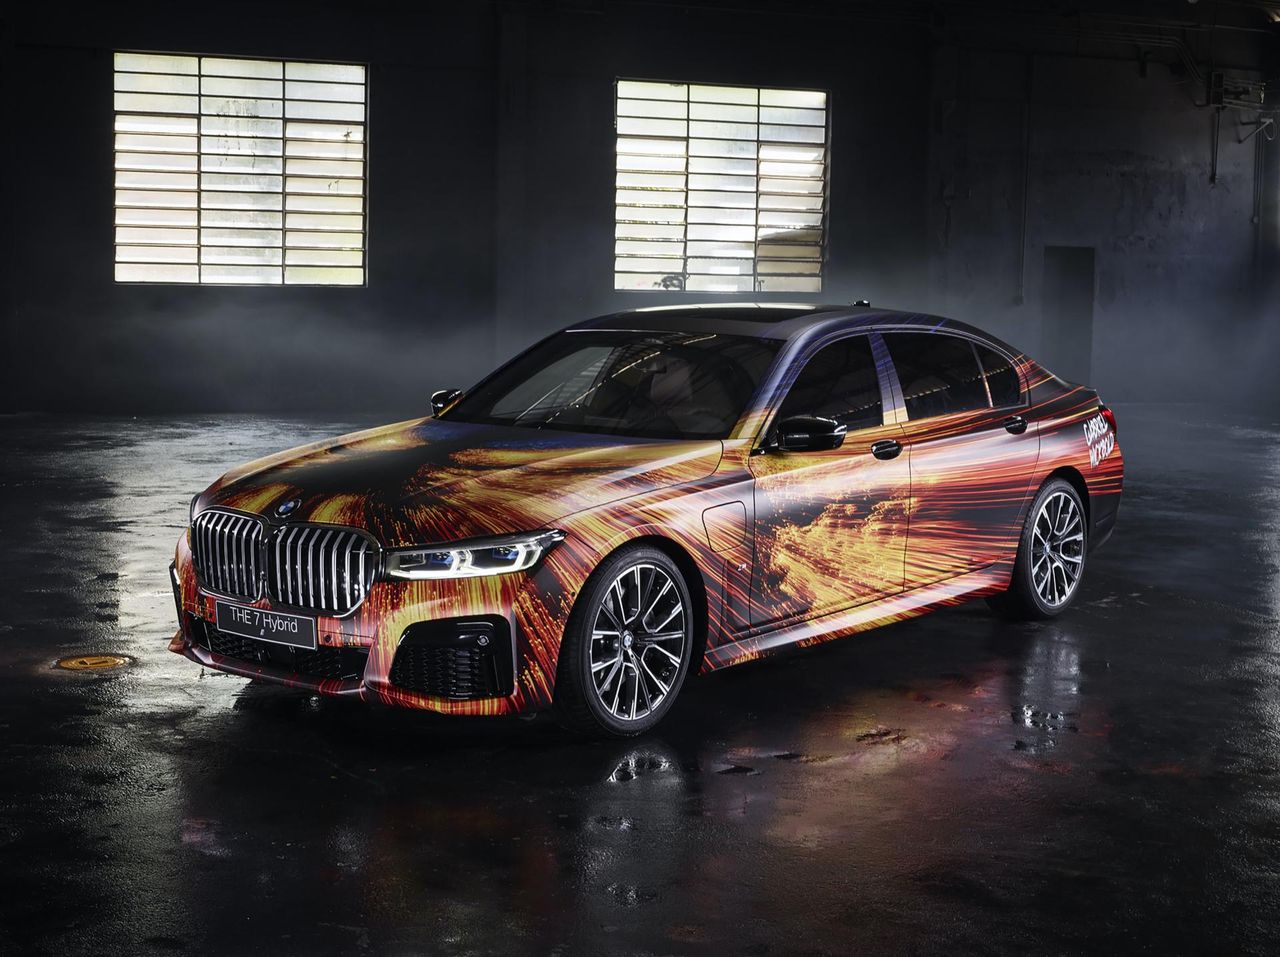 BMW Serii 7 Art Car zyskało ciekawe malowanie, ale nadal ma za duży grill